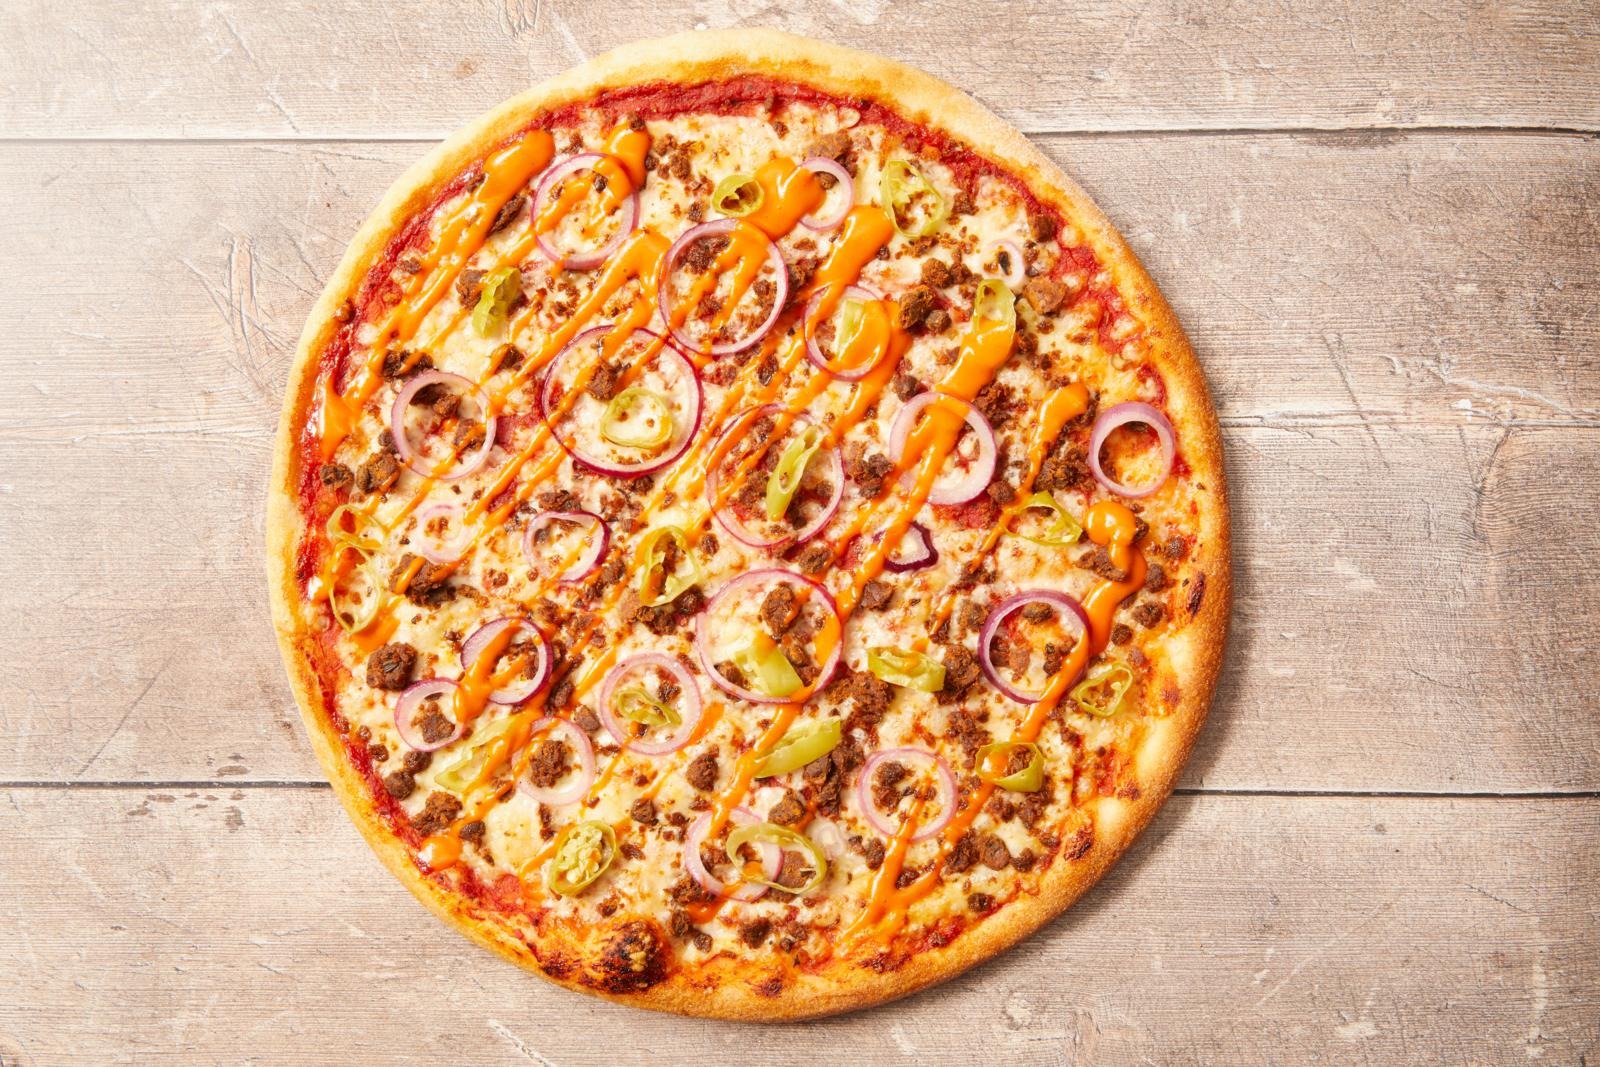 Arki-illan fiestabuffa | Pizza & Buffa Prisma, Kouvola 